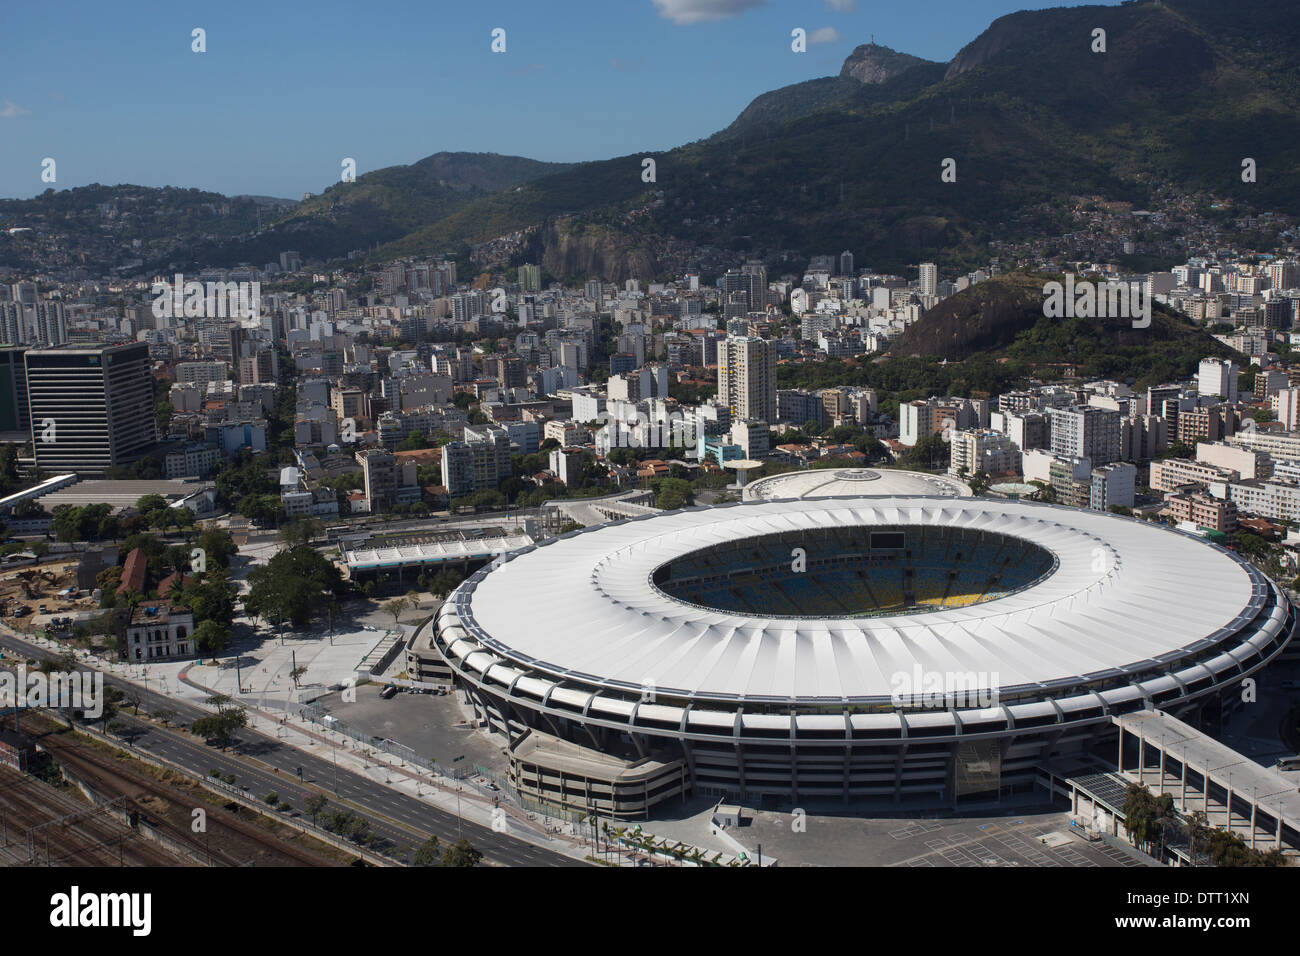 Vista aerea del Maracana National Stadium di Rio de Janeiro, che ospiterà la finale della Coppa del Mondo 2014 in Brasile Foto Stock